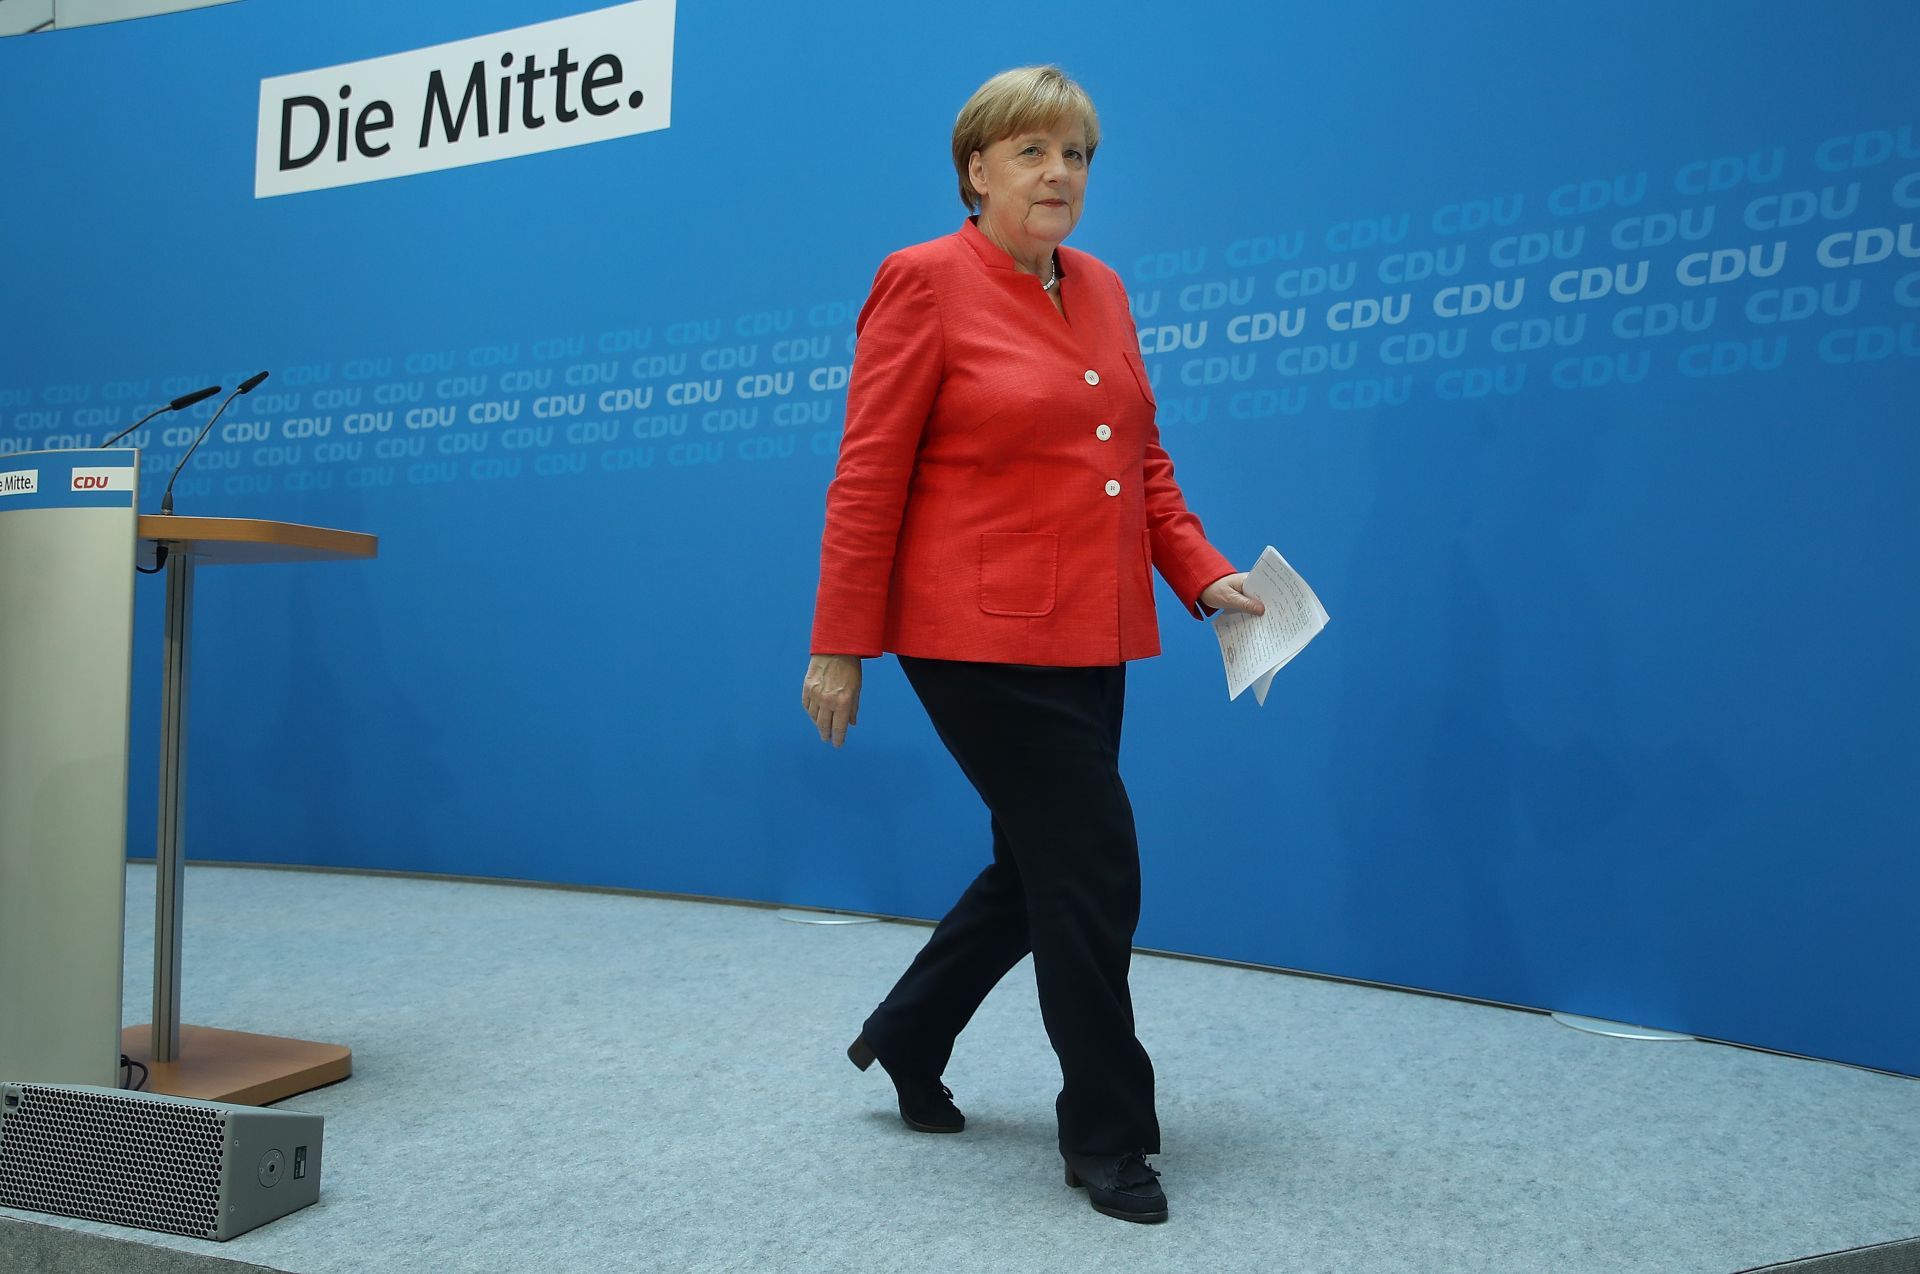 Меркел напуска лидерския пост в ХДС заради резултата от изборите в Хесен